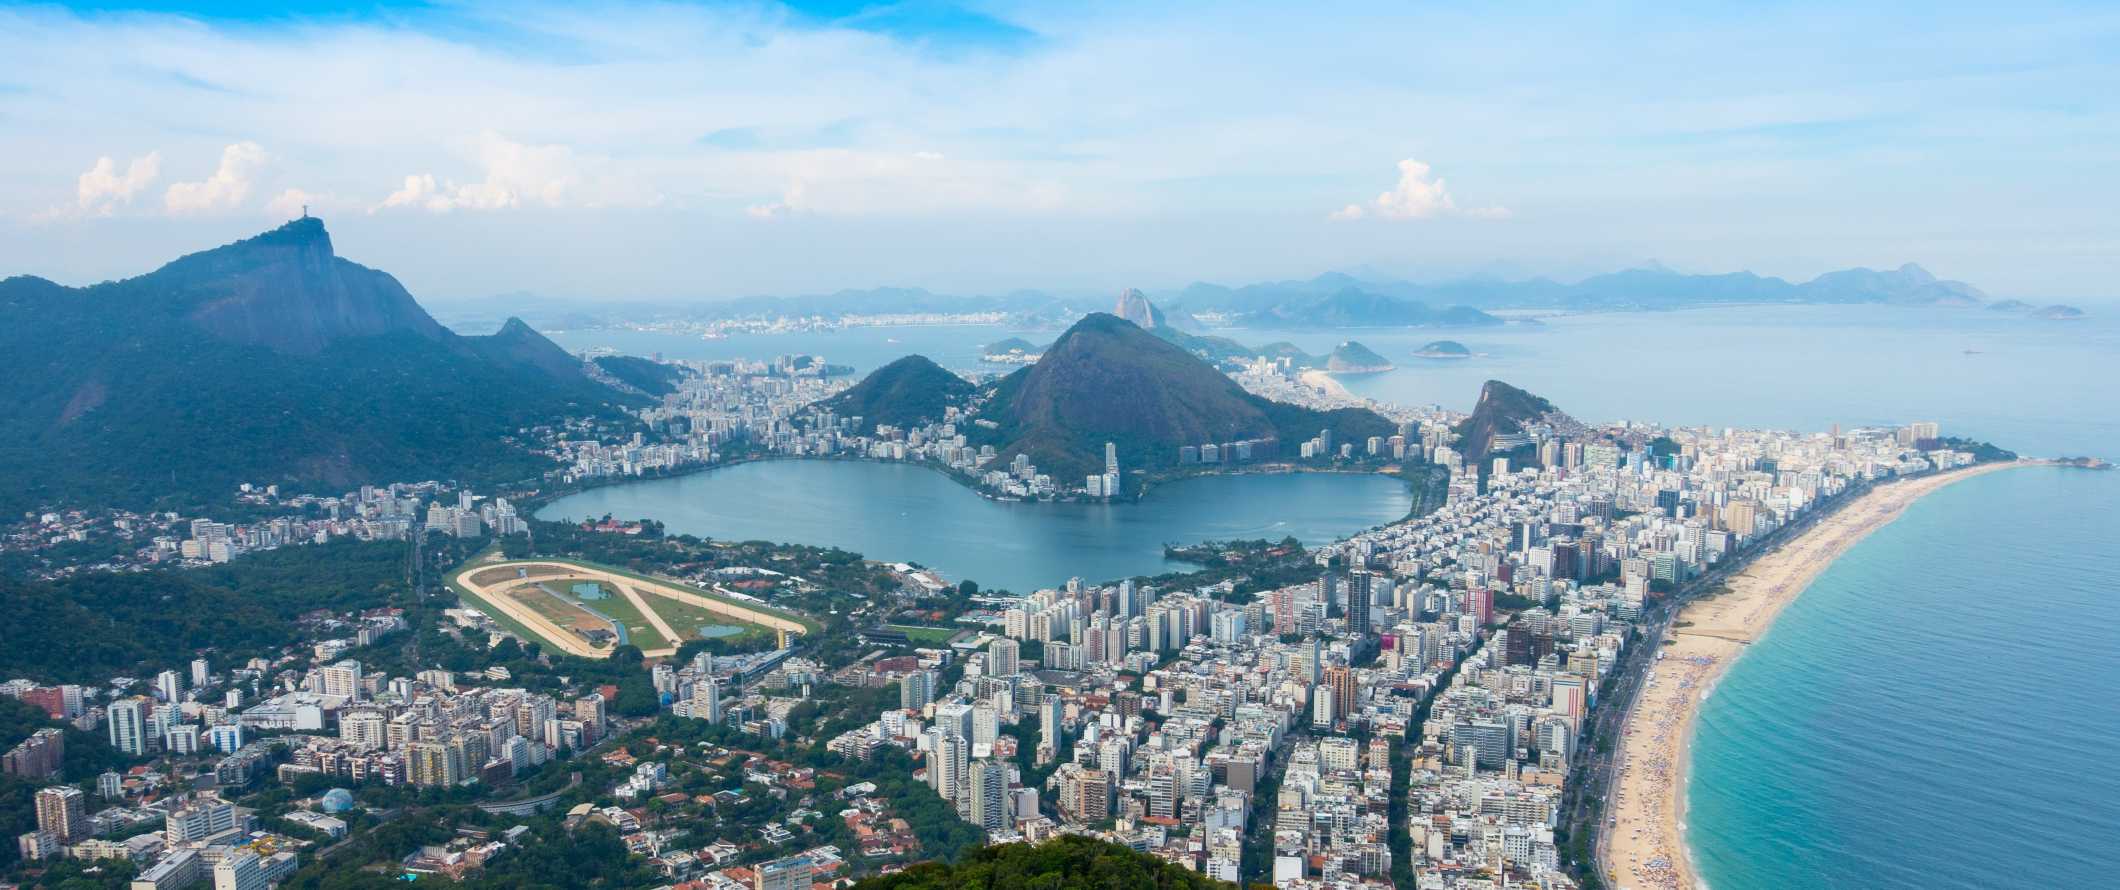 Vista panorâmica do Rio de Janeiro com arranha-céus ao longo da praia e montanhas ao fundo